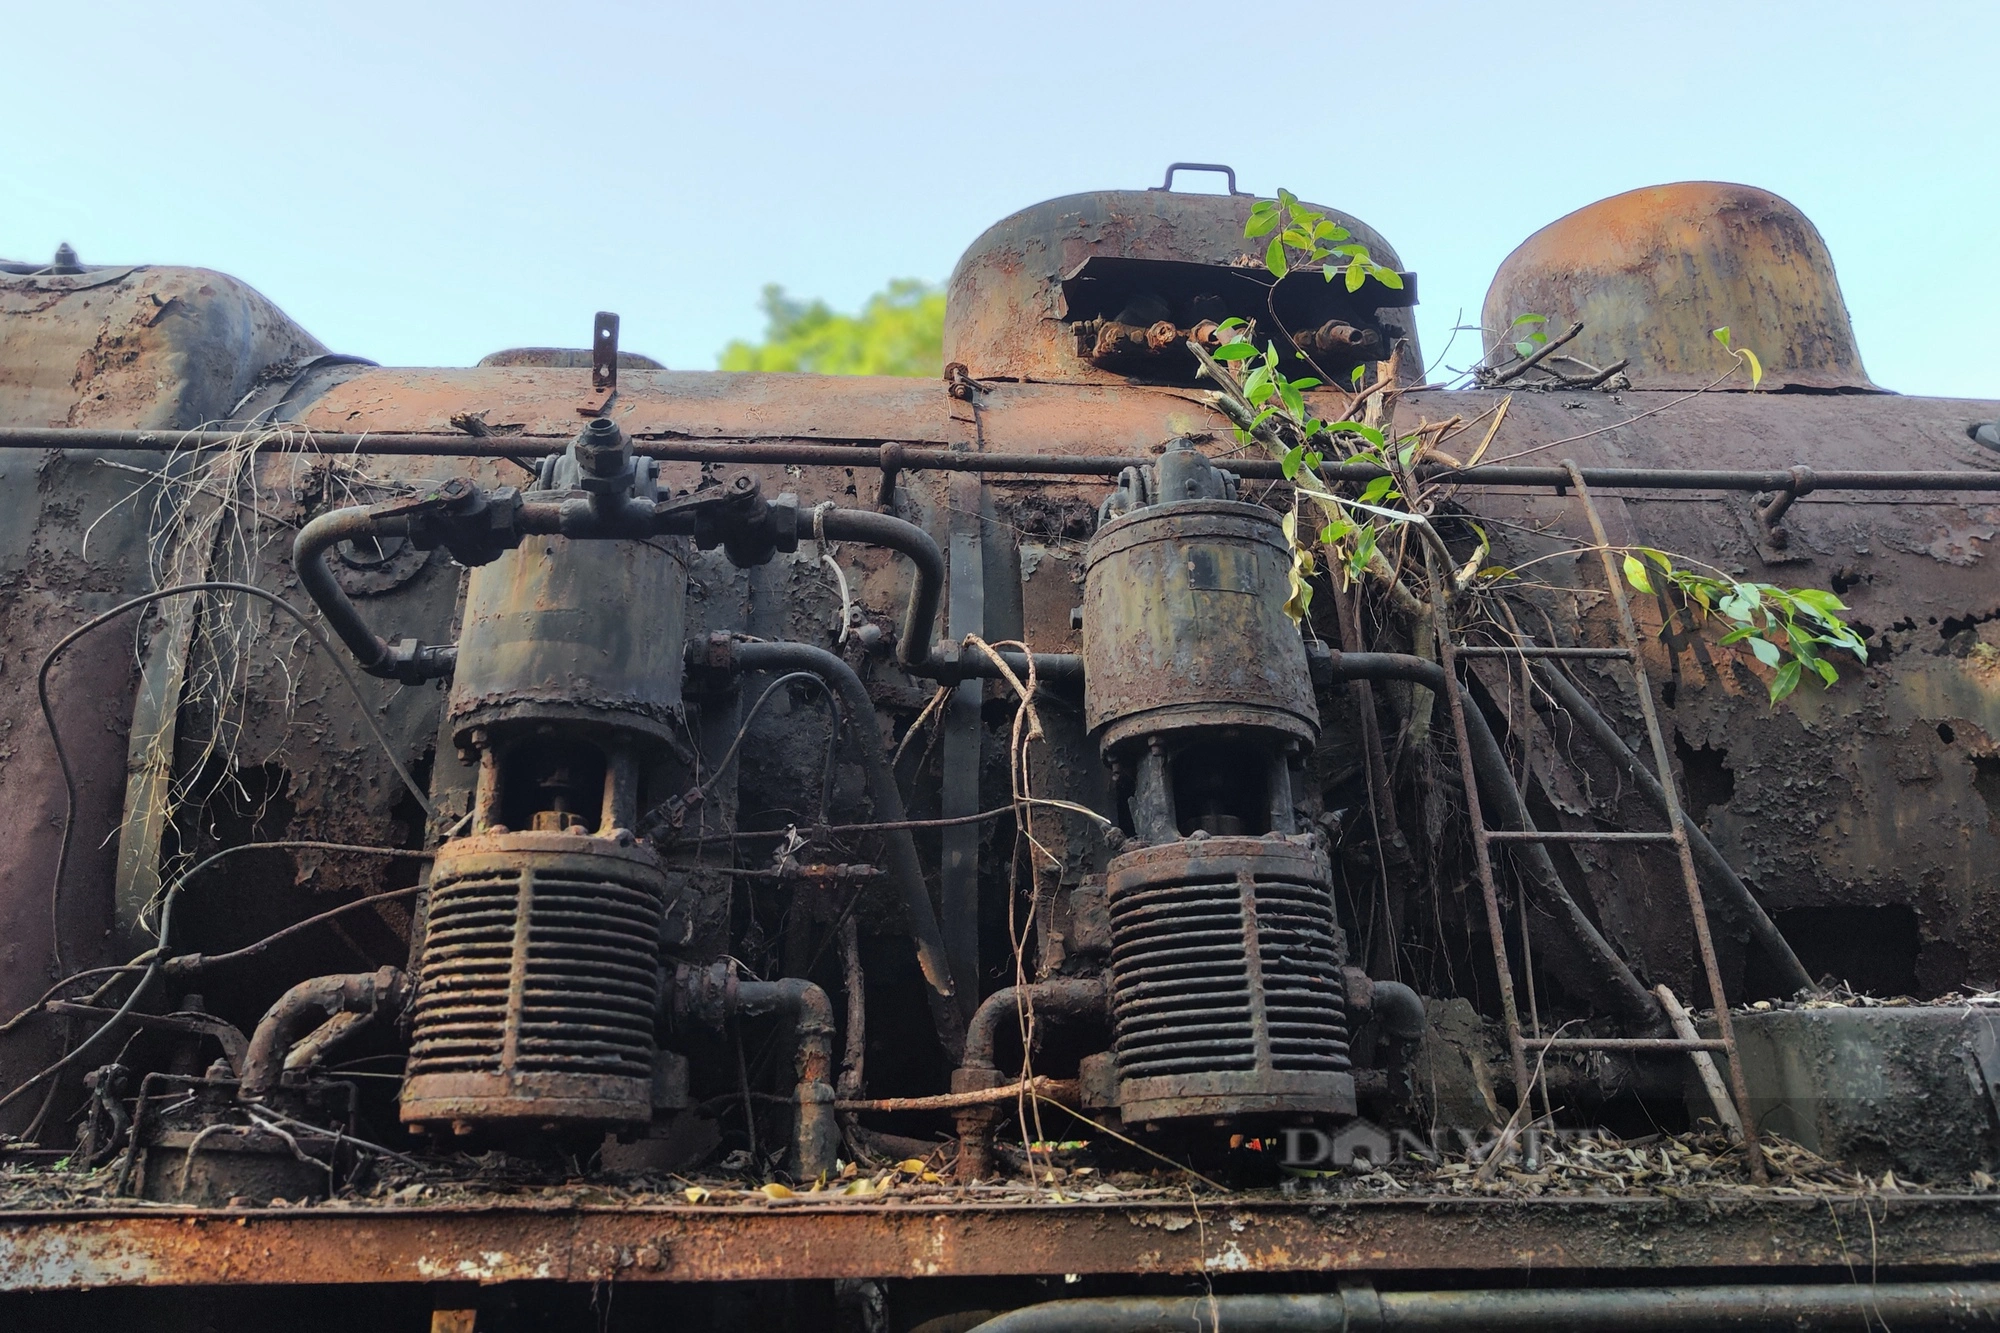  Đầu máy hơi nước Tự Lực rỉ sét ẩn mình trong nhà máy xe lửa Gia Lâm - Ảnh 4.